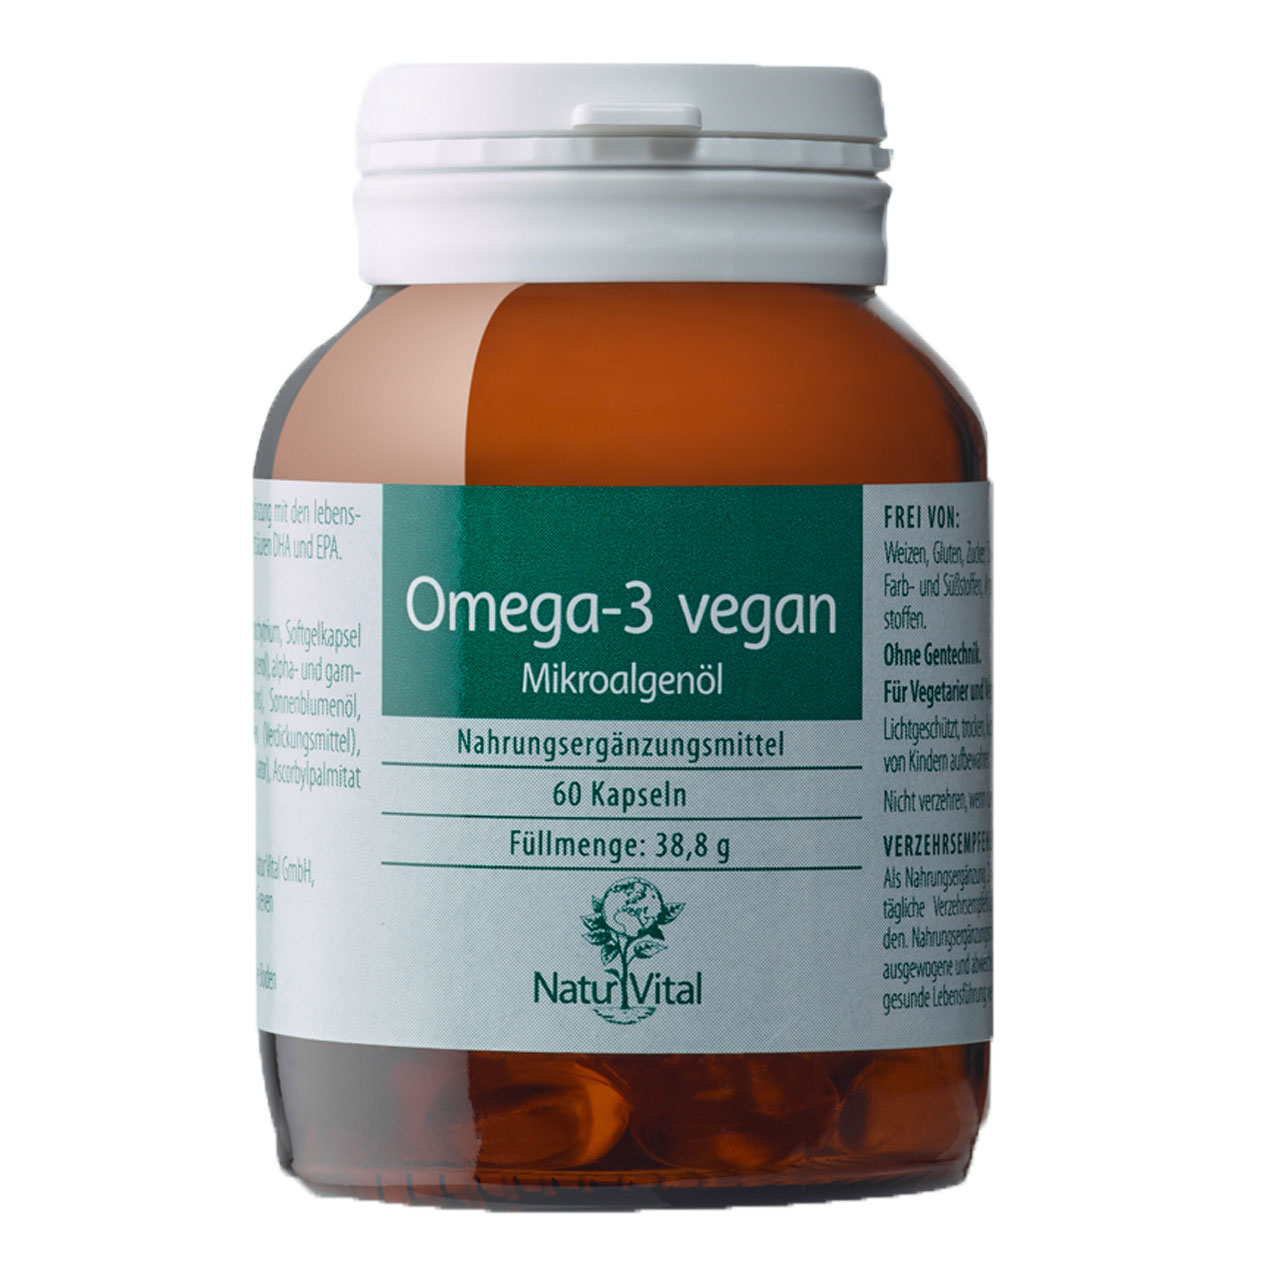 Omega 3 Vegan Algenöl von Natur Vital beinhaltet 60 Kapseln